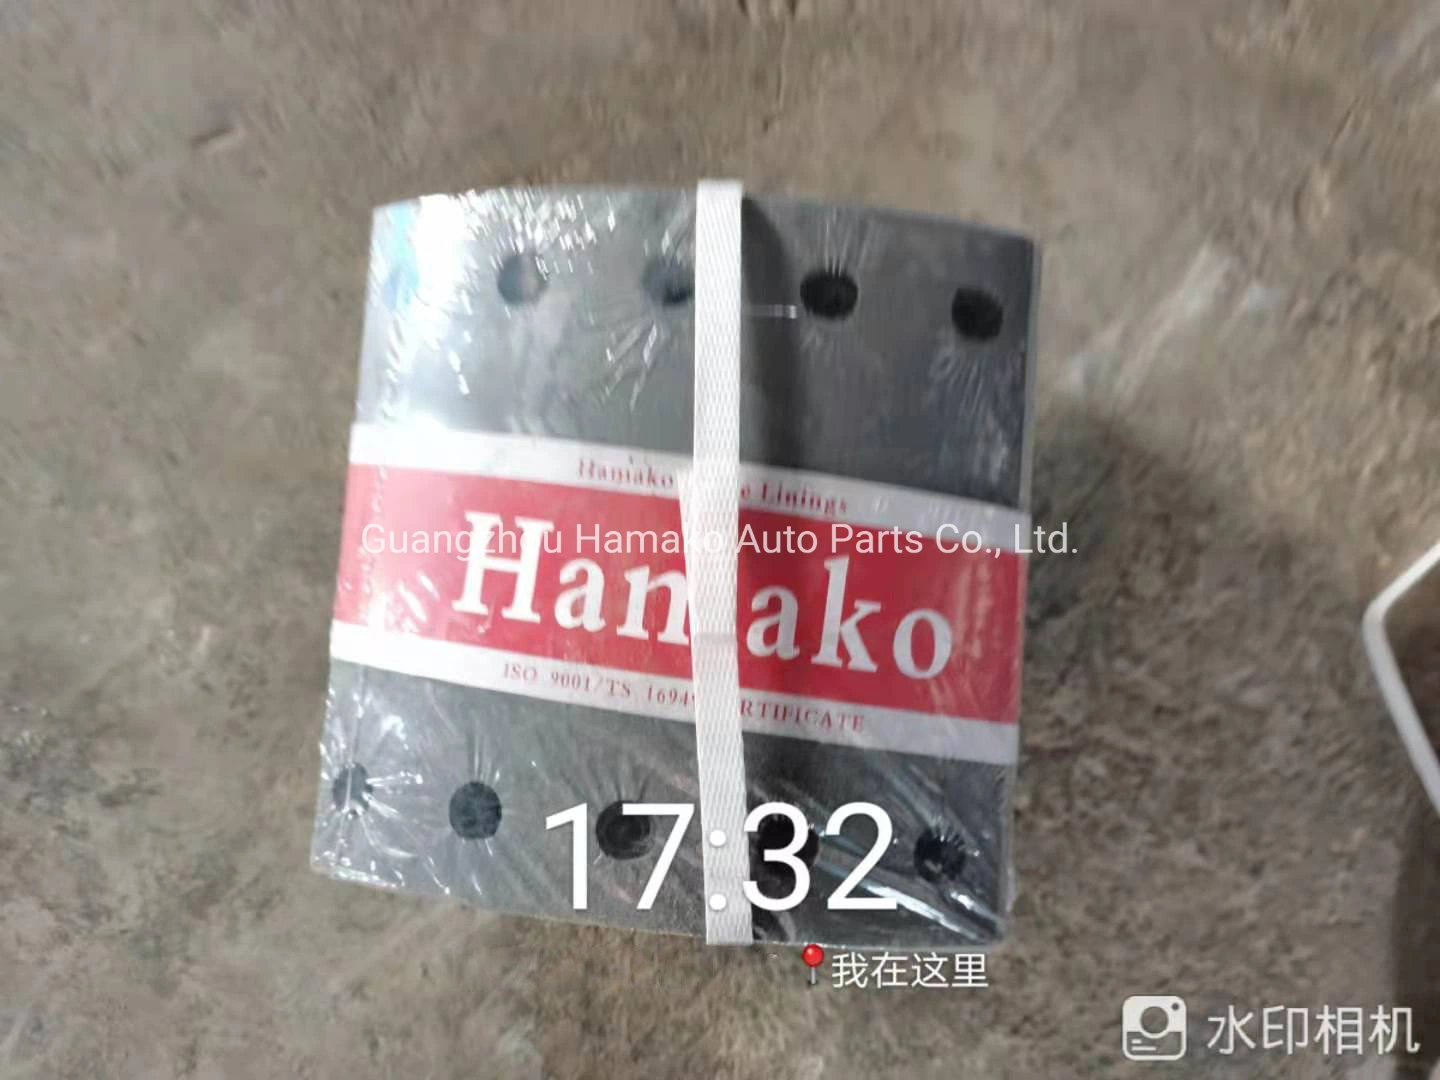 Xtrake Hamako forros de freno pastillas de cerámica de color negro de la camisa del amianto no para KIA